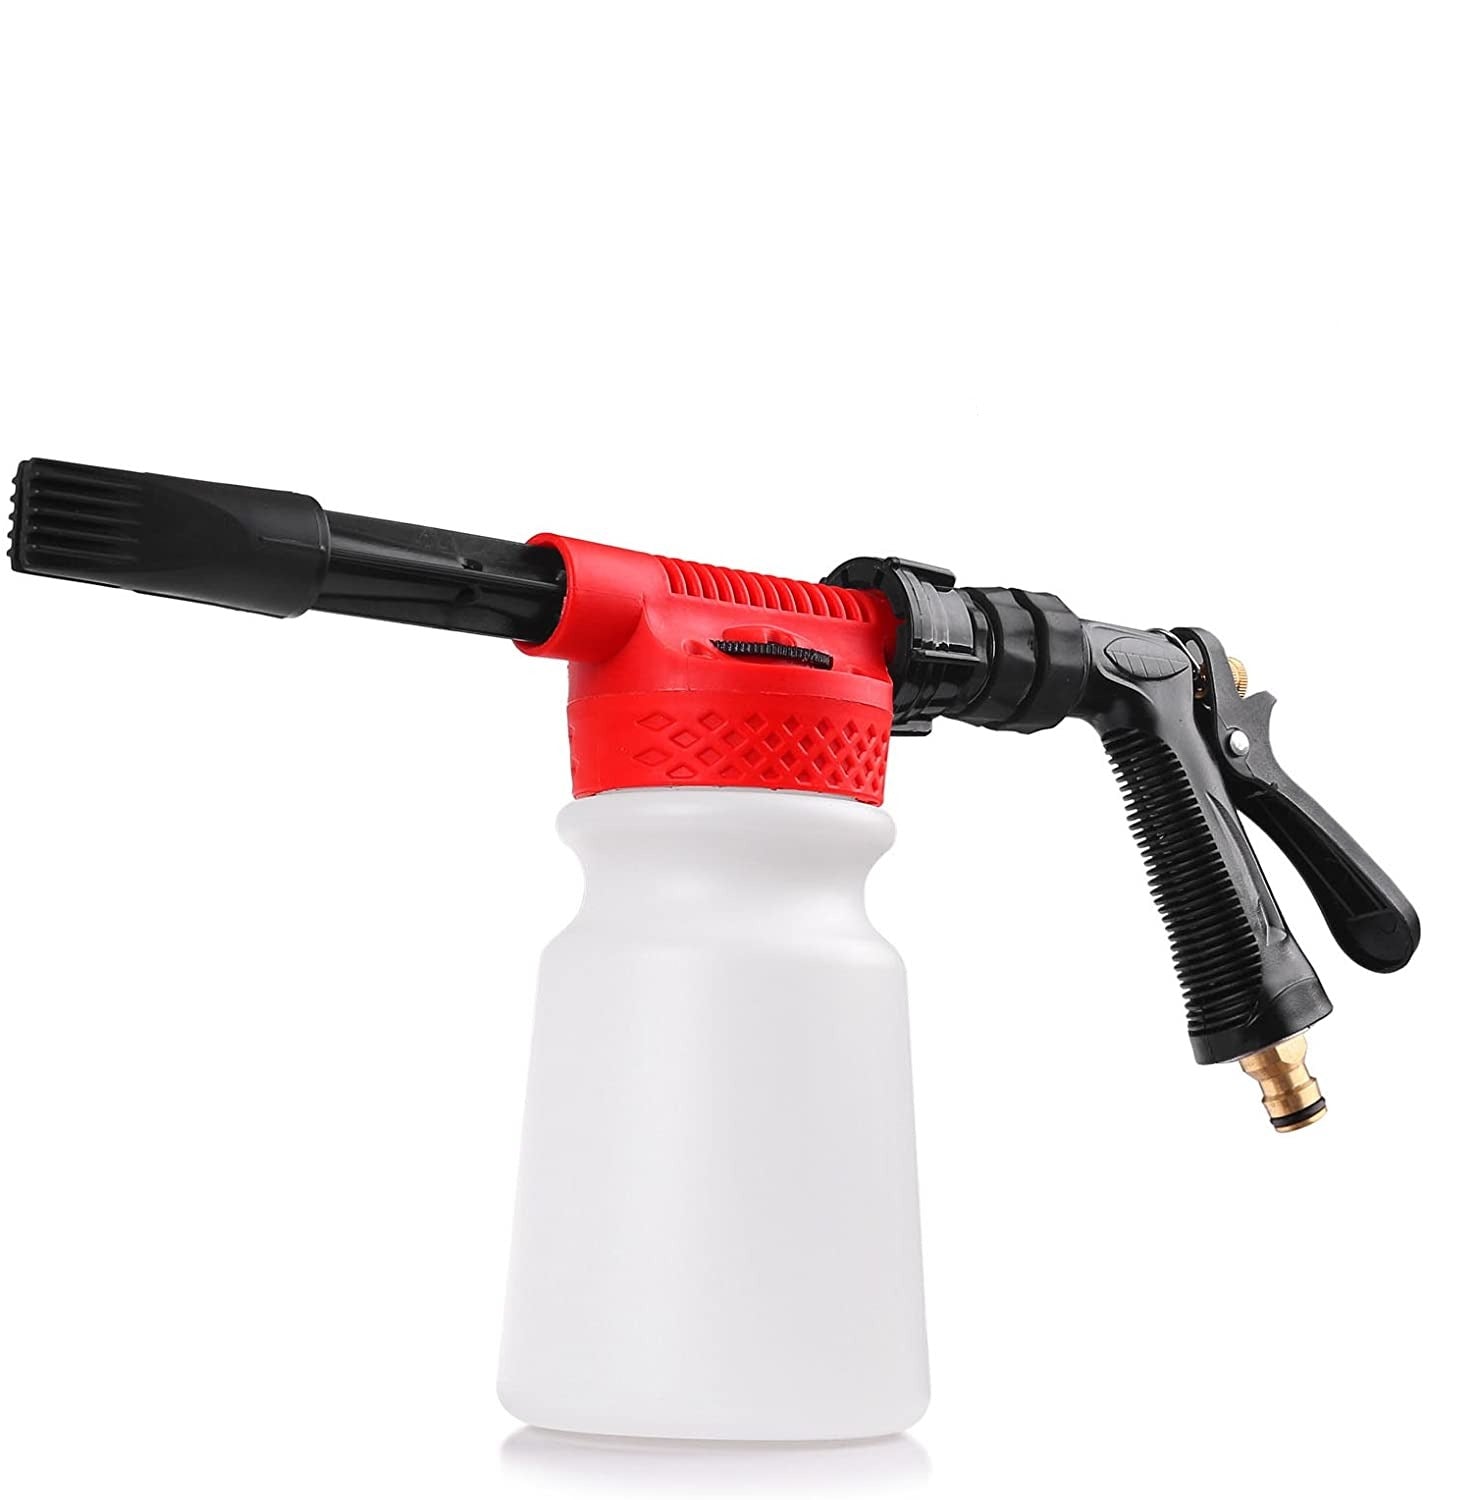 TheCleanGun™ Blaster Foam Blaster Gun – OffGrid Store